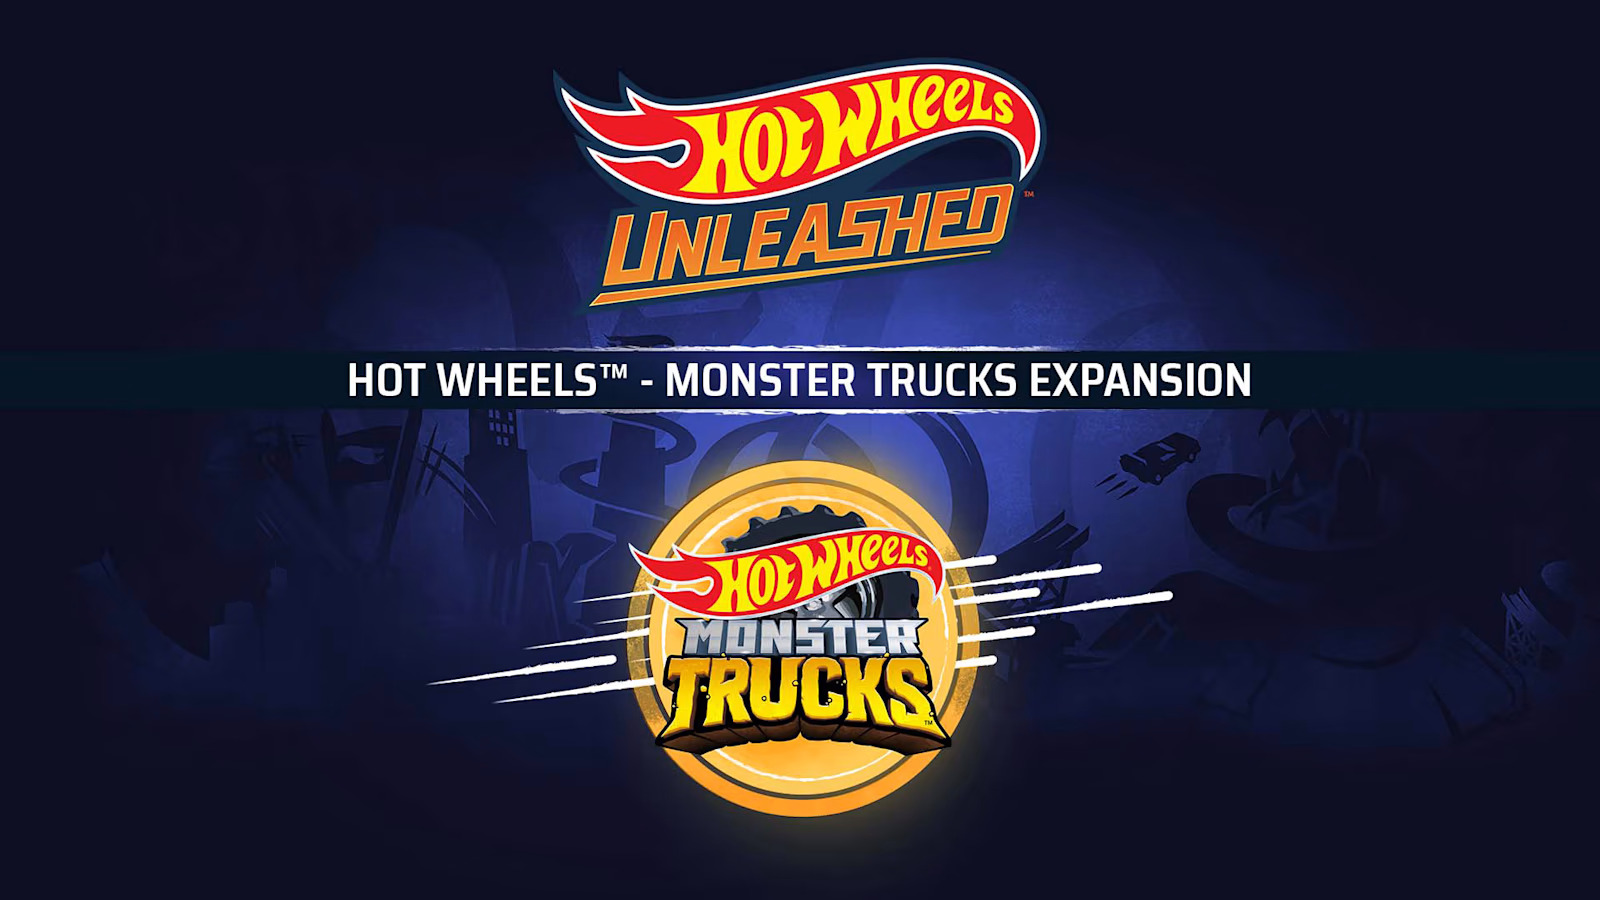 HOT WHEELS - Monster Trucks